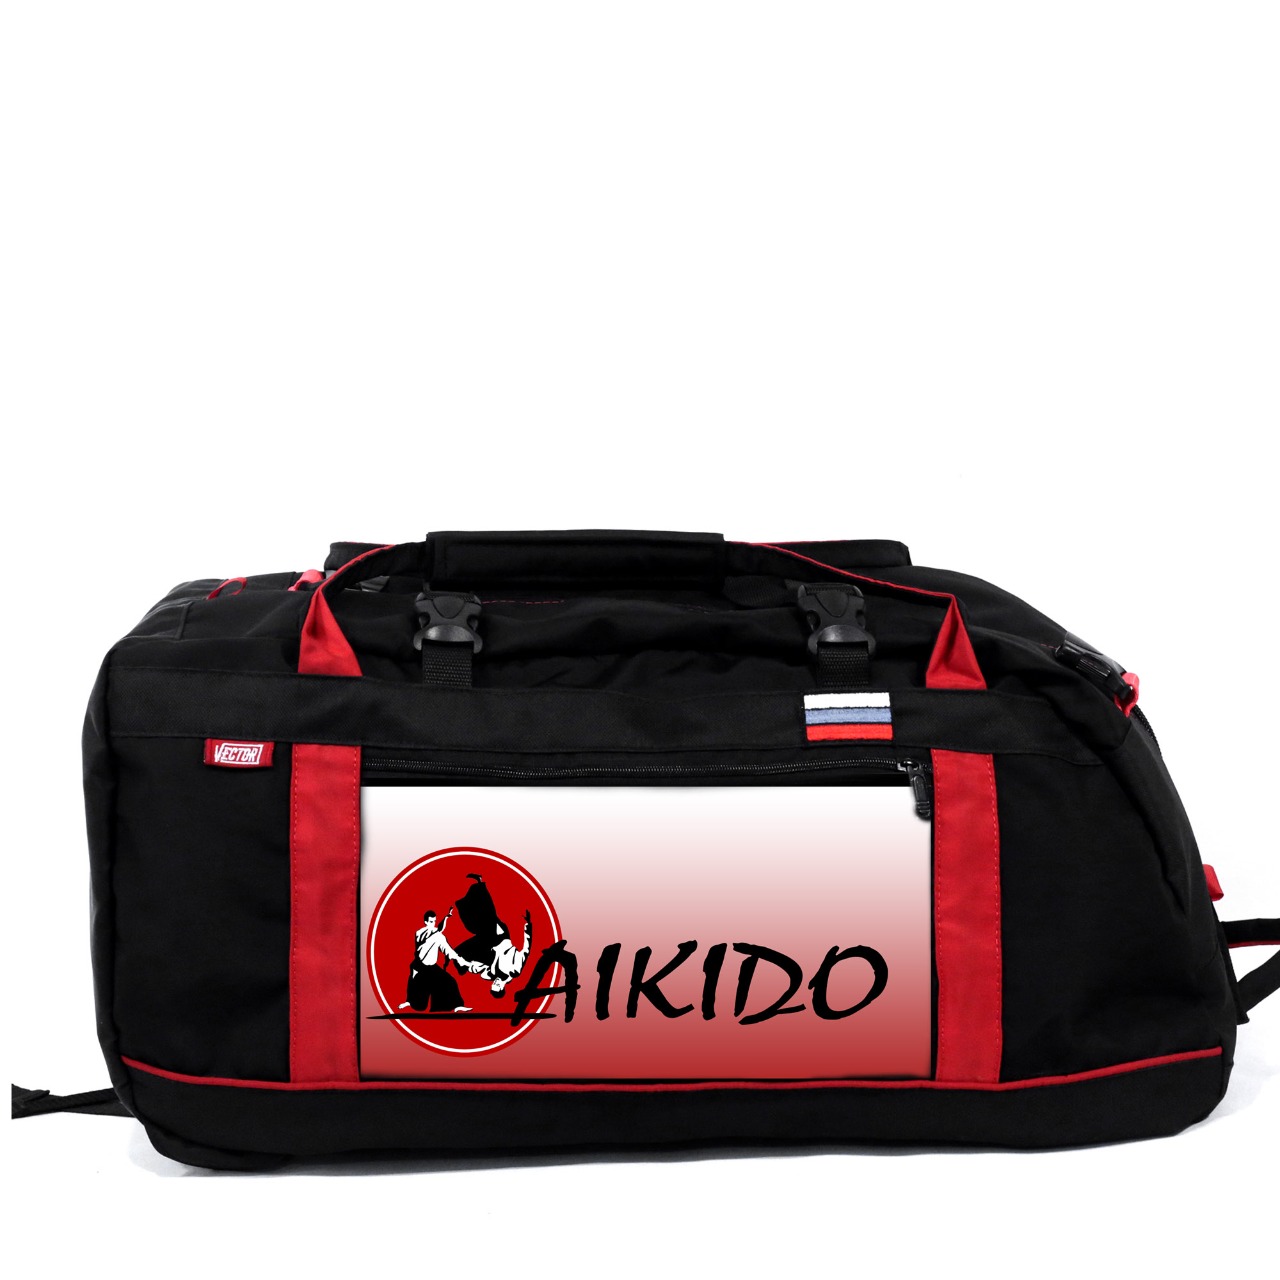 Спортивная сумка Спорт Сибирь Айкидо 55 литров черная